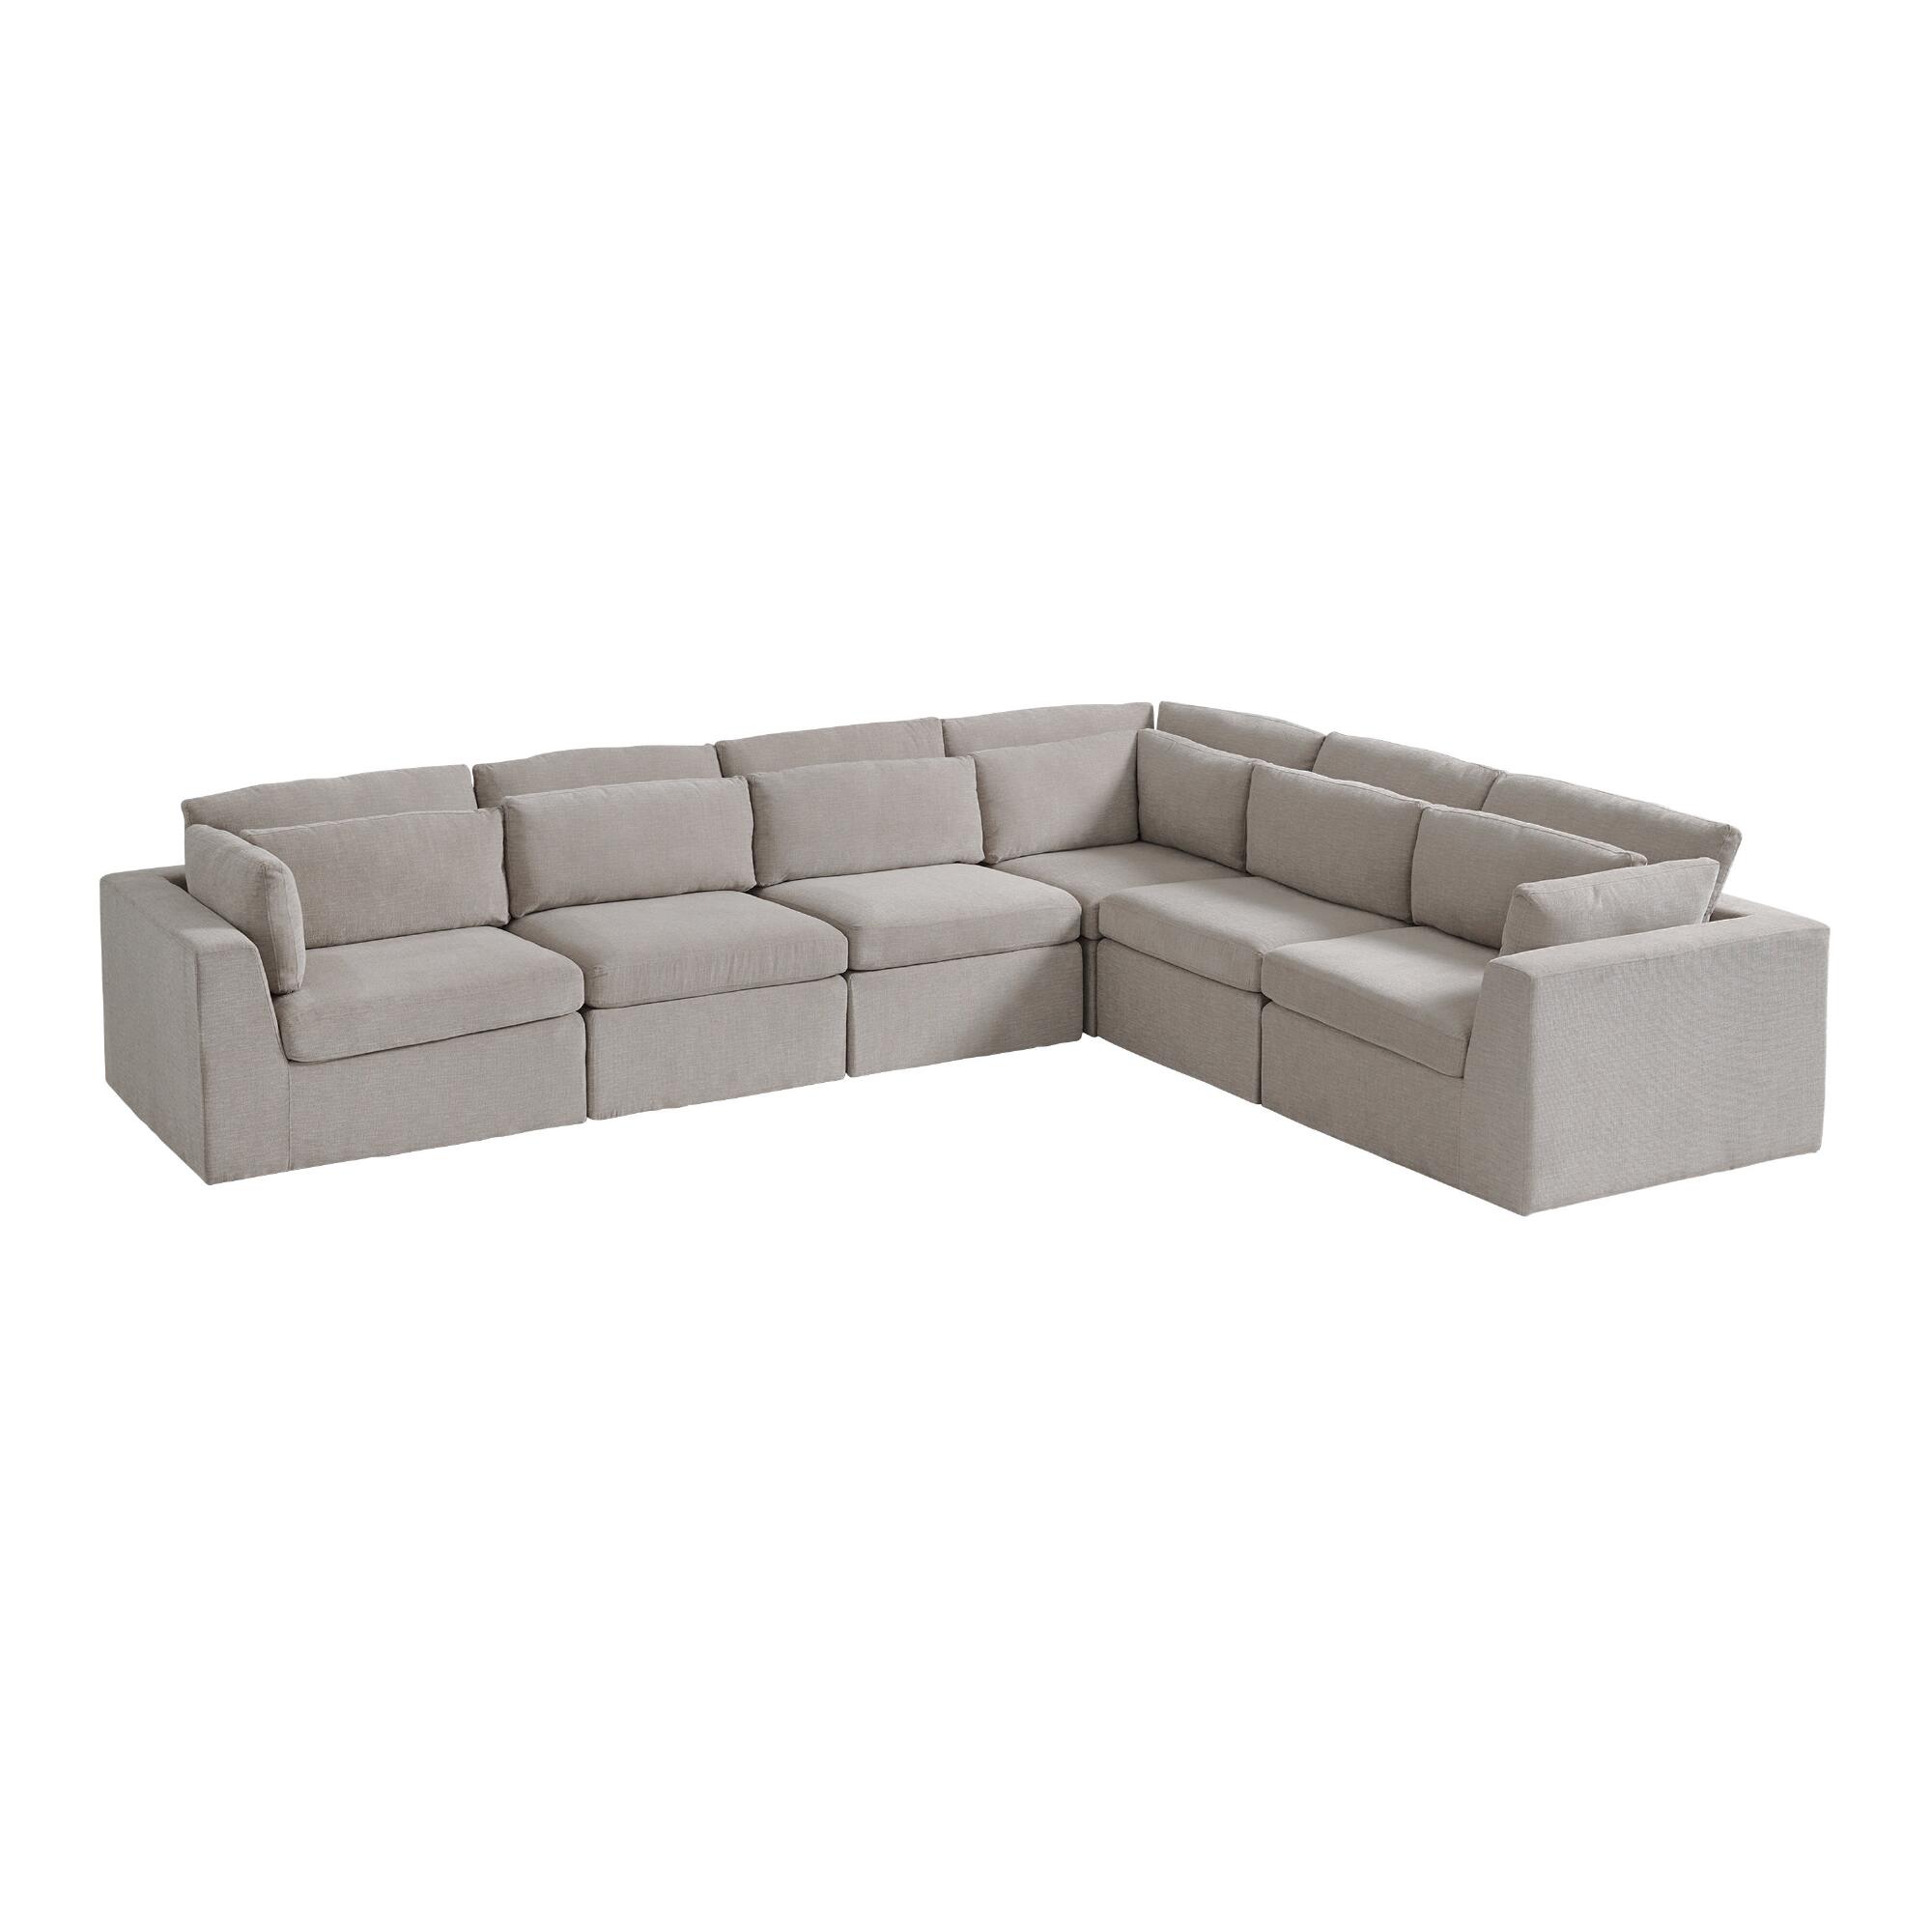 Gray Emmett 6 Piece Modular Sectional Sofa by World Market